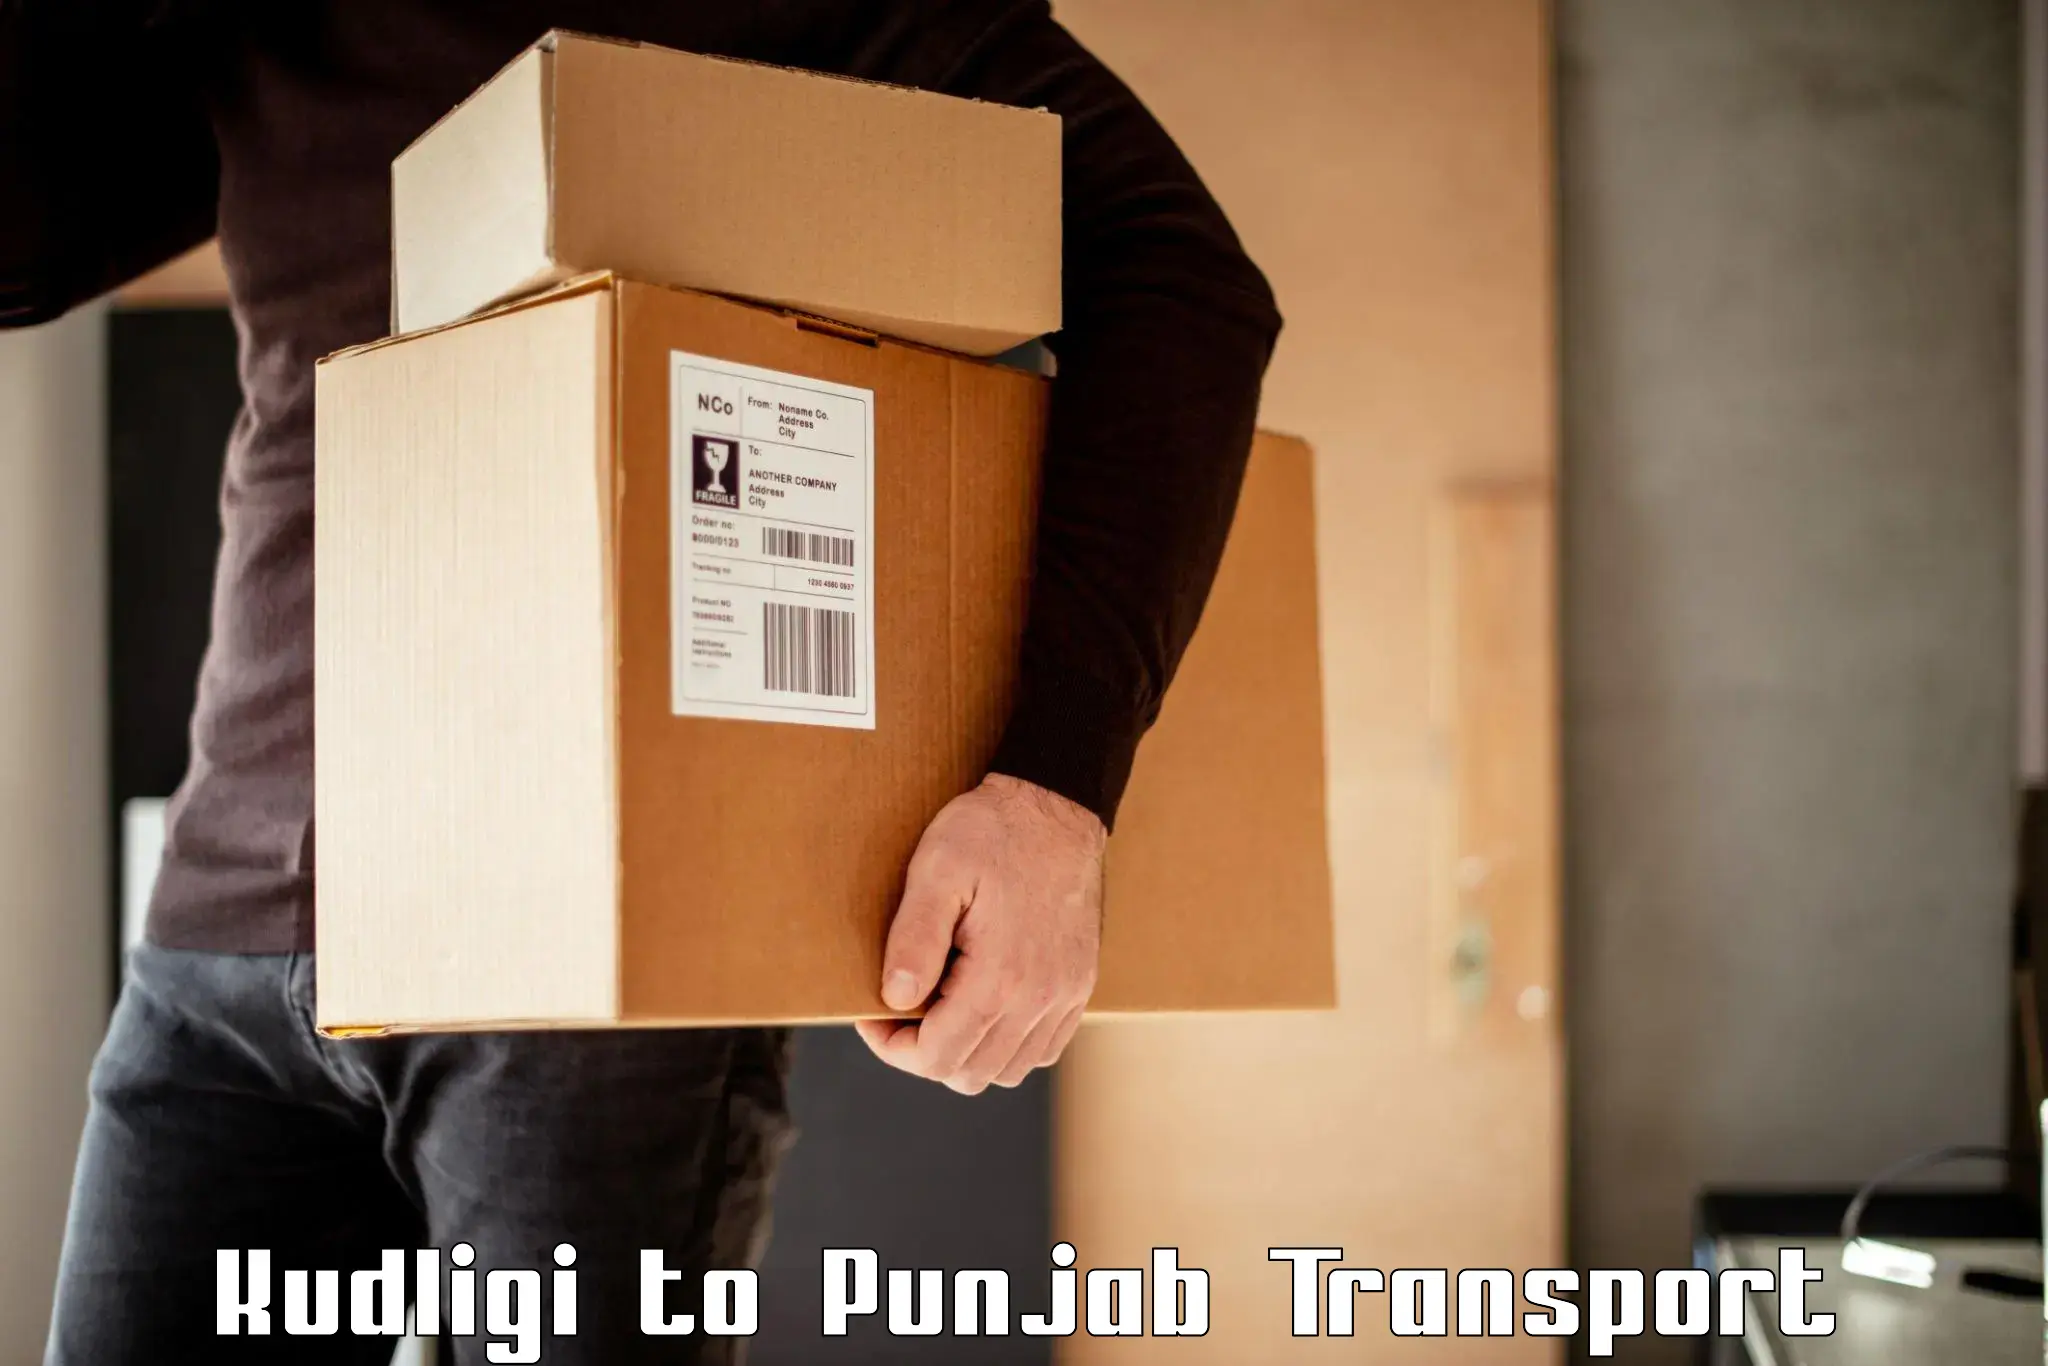 Part load transport service in India Kudligi to Talwandi Sabo